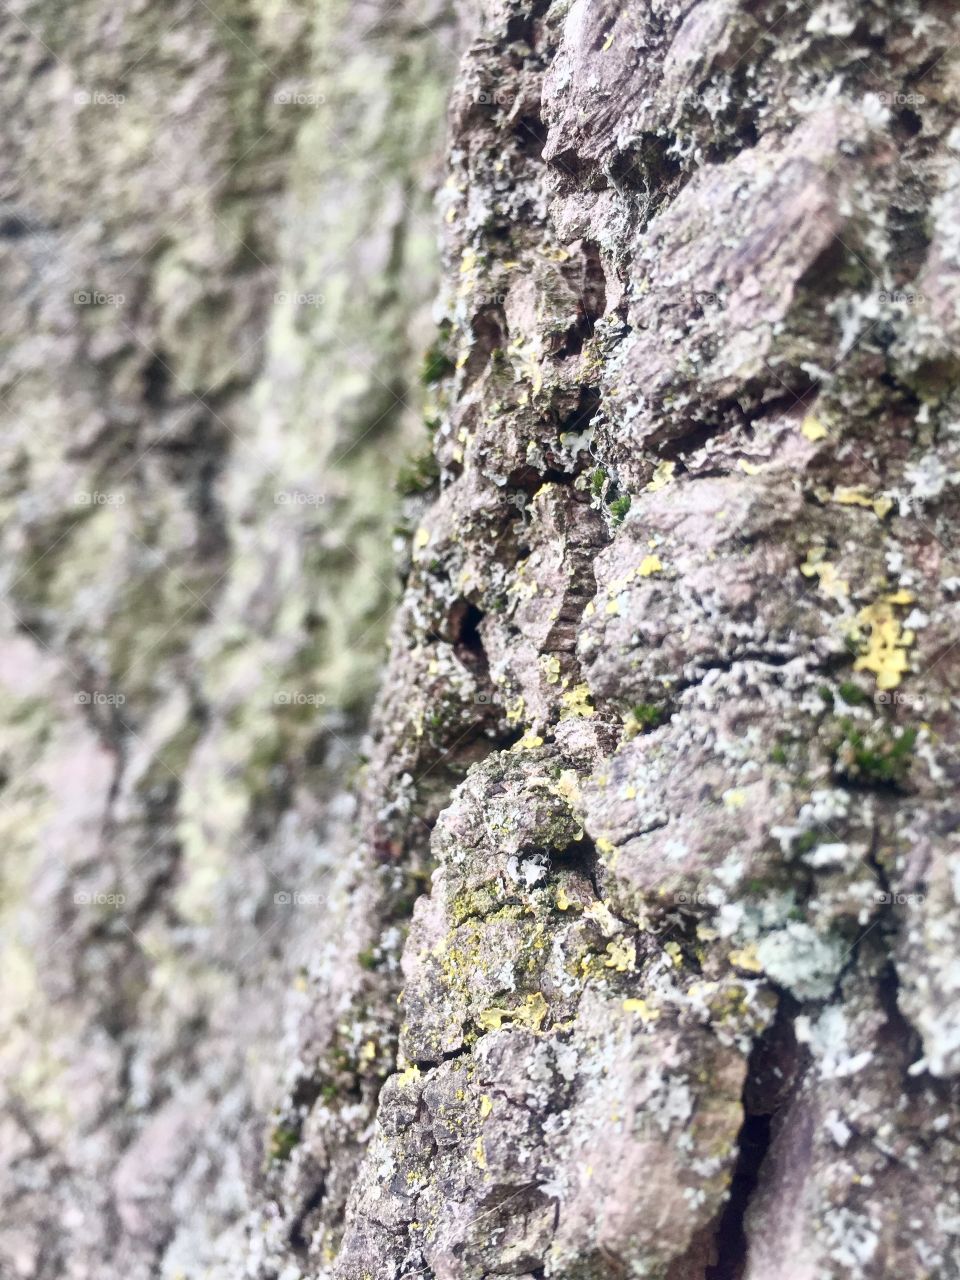 Tree bark close up